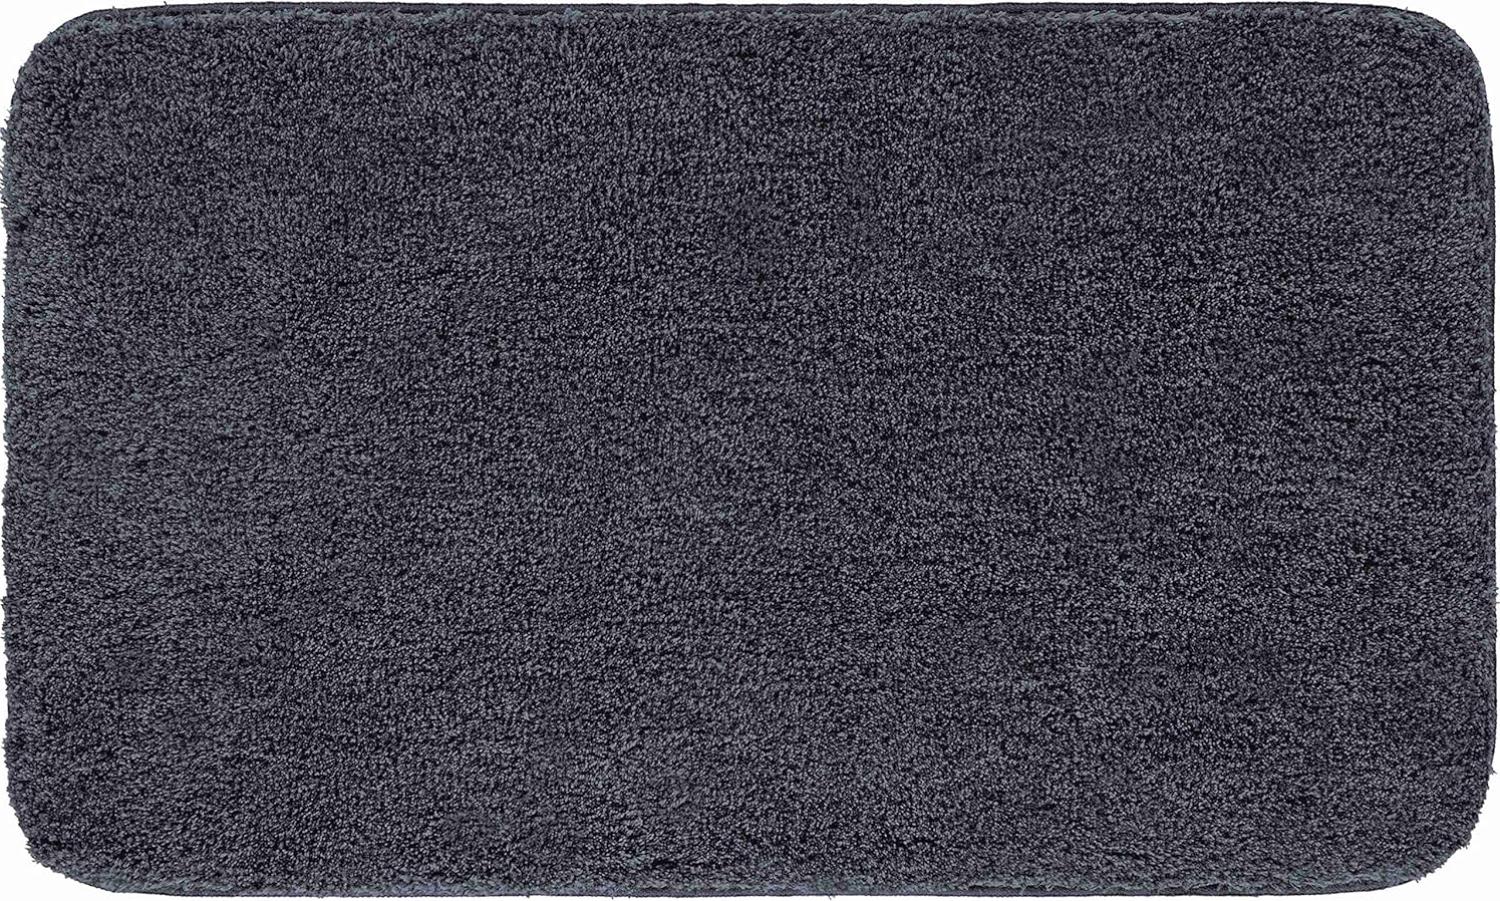 Grund Melange Badteppich, Acryl, Granit, 70x120 cm Bild 1